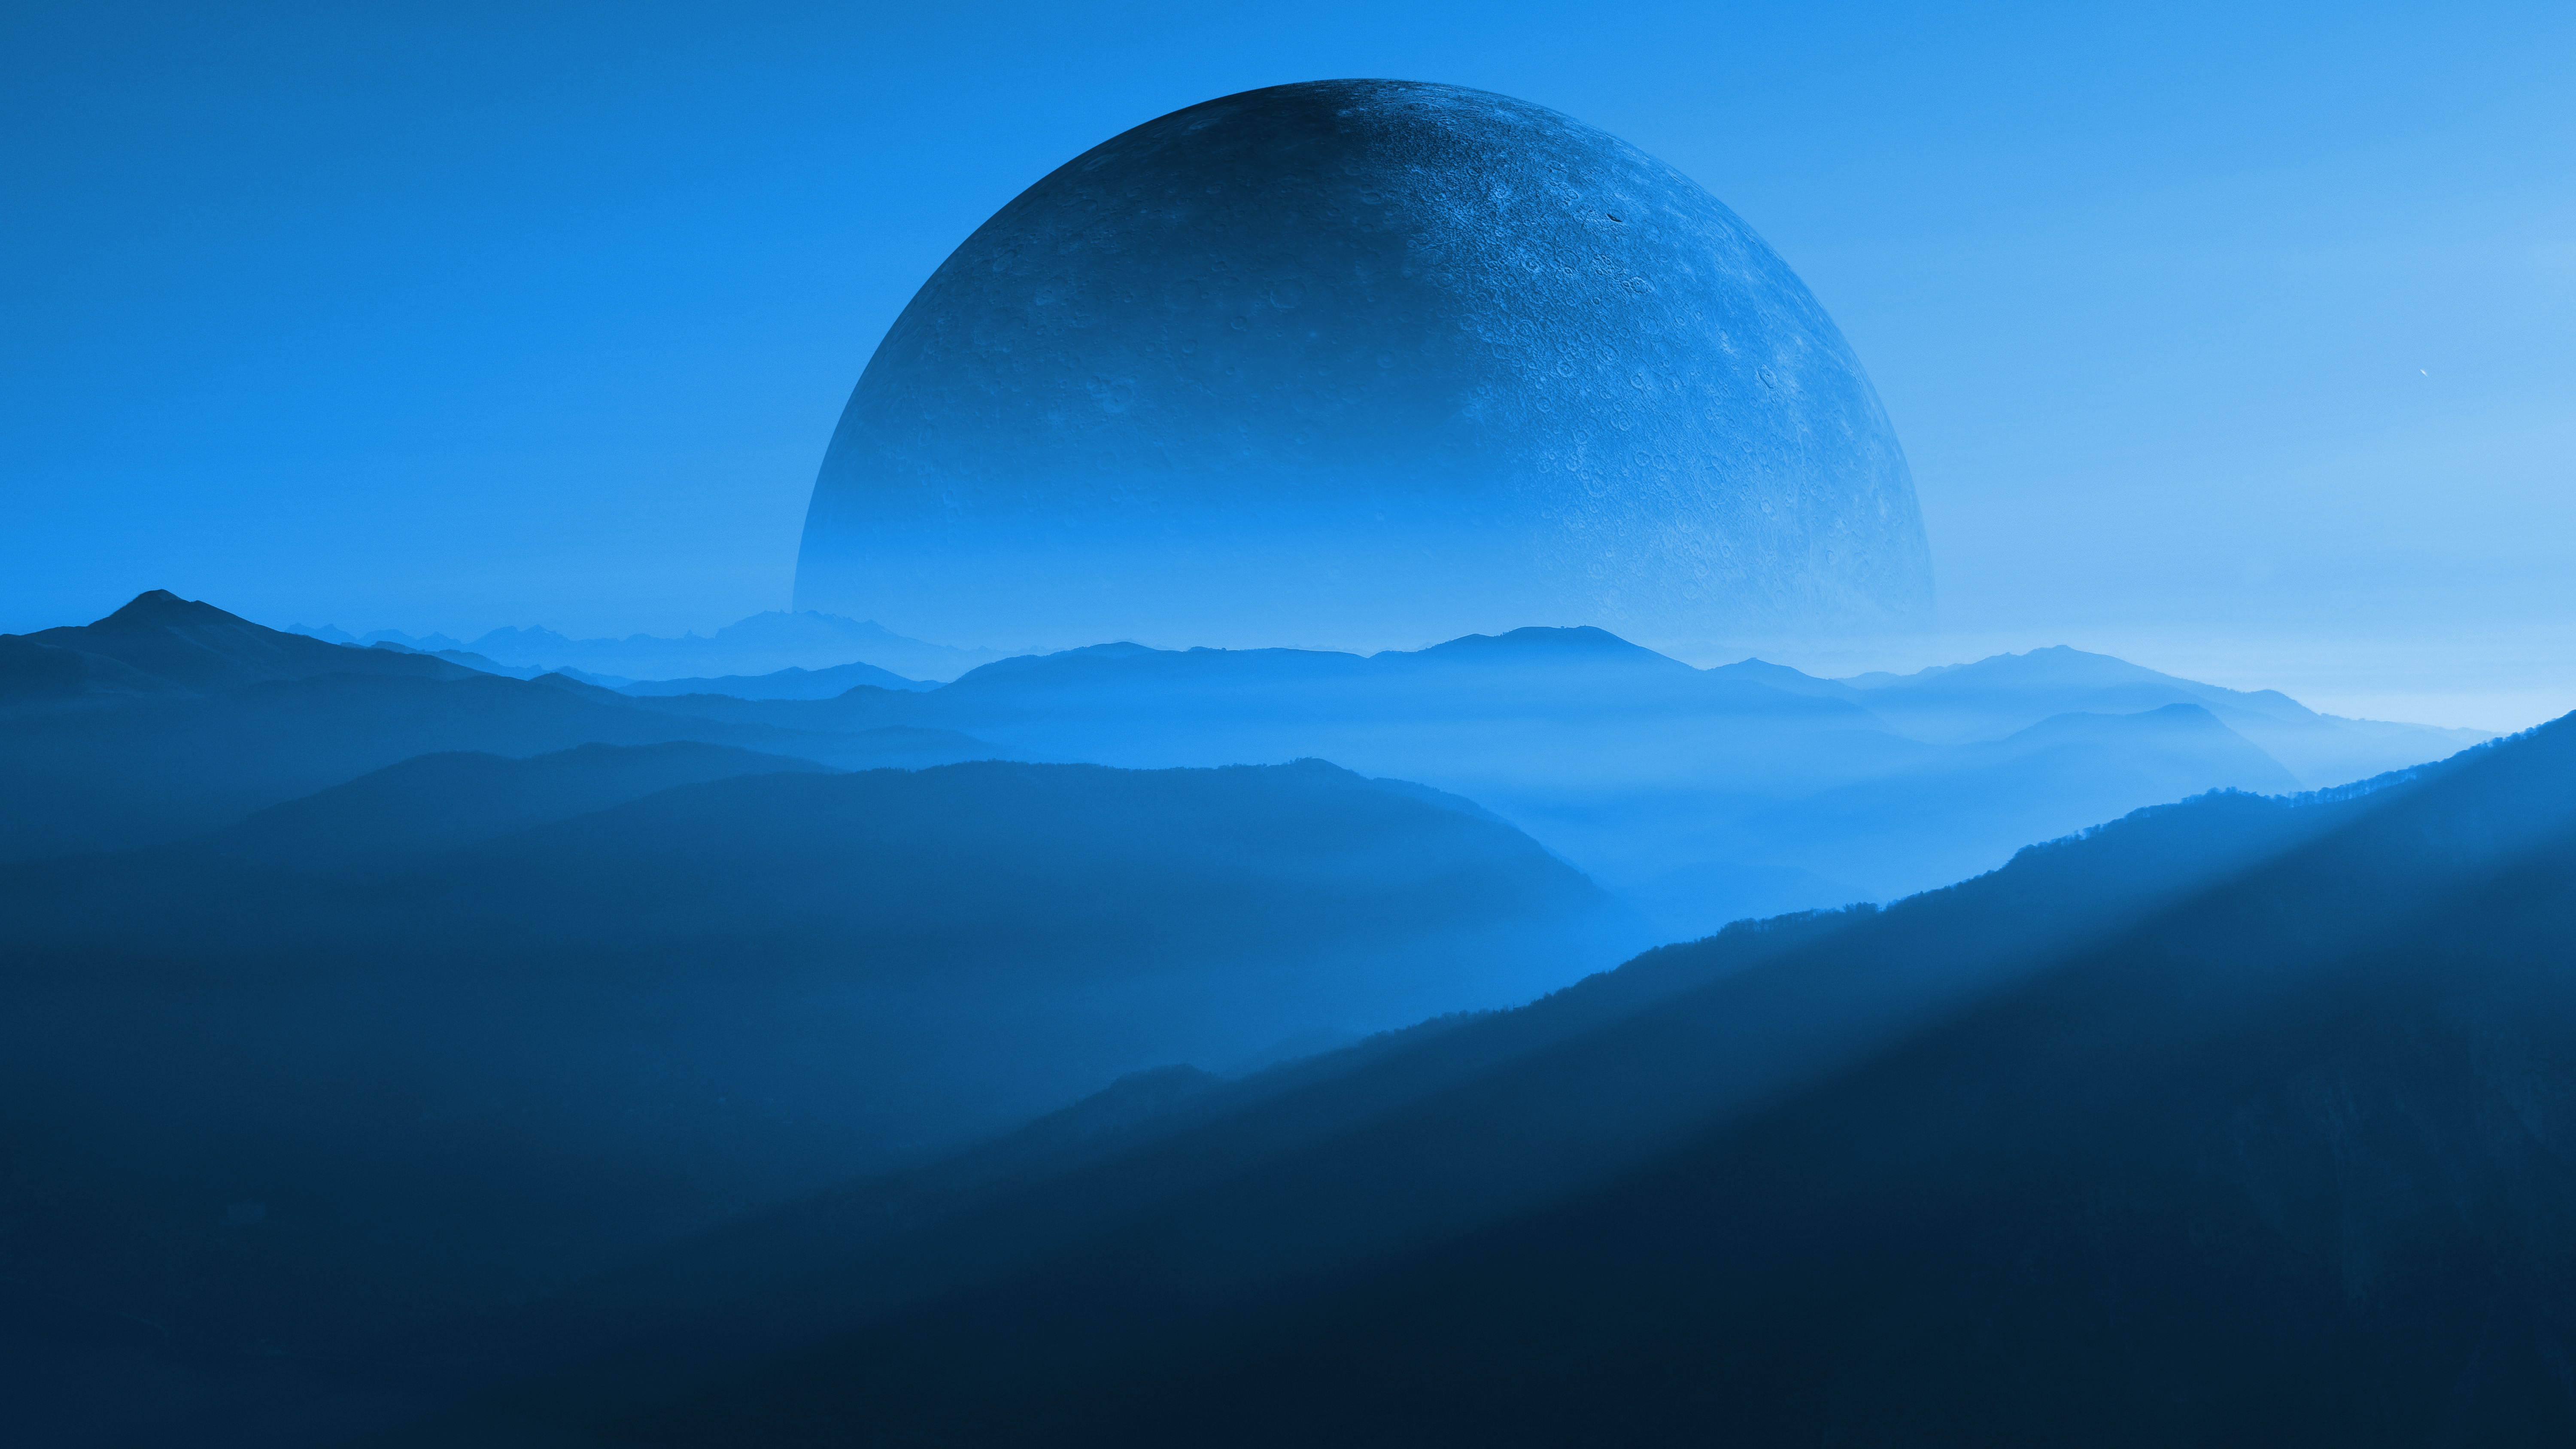 Mountains 3D Render Planet Moon Science Fiction Blue Mist Landscape 6000x3375